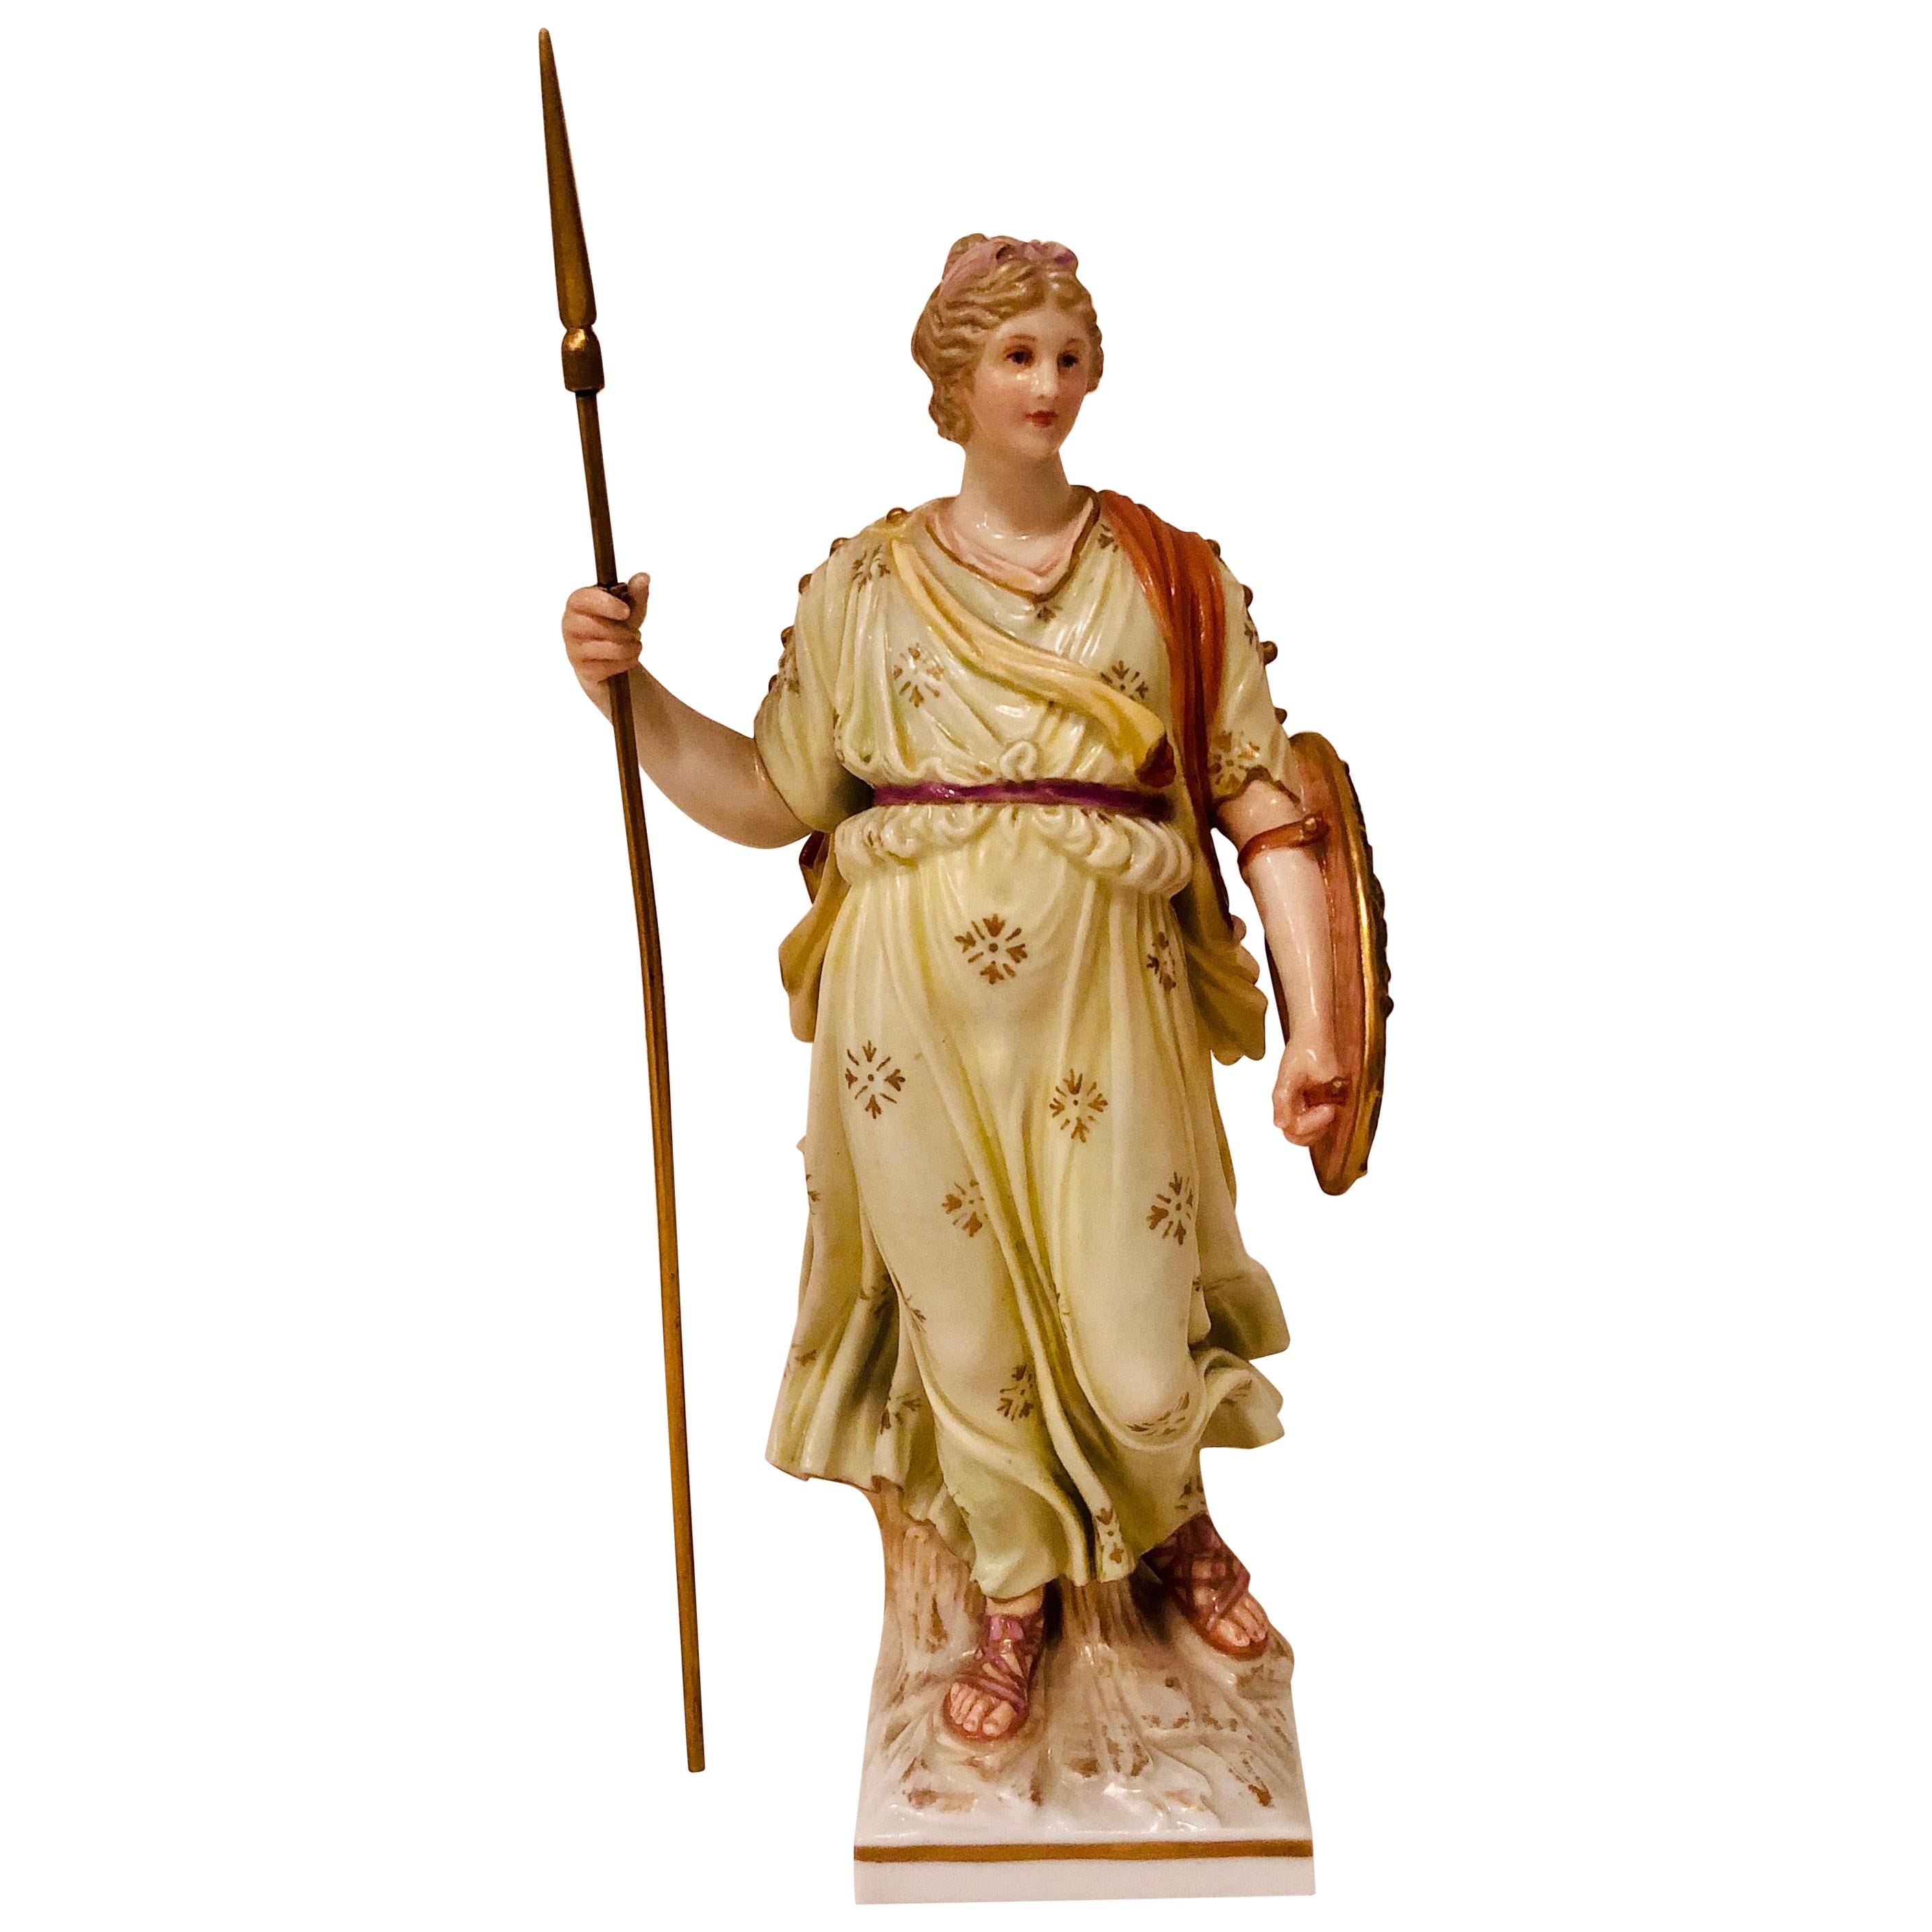 KPM-Figur einer Lady Warrior, die einen Speer und ein Schild mit einem Gesicht und Flügeln hält